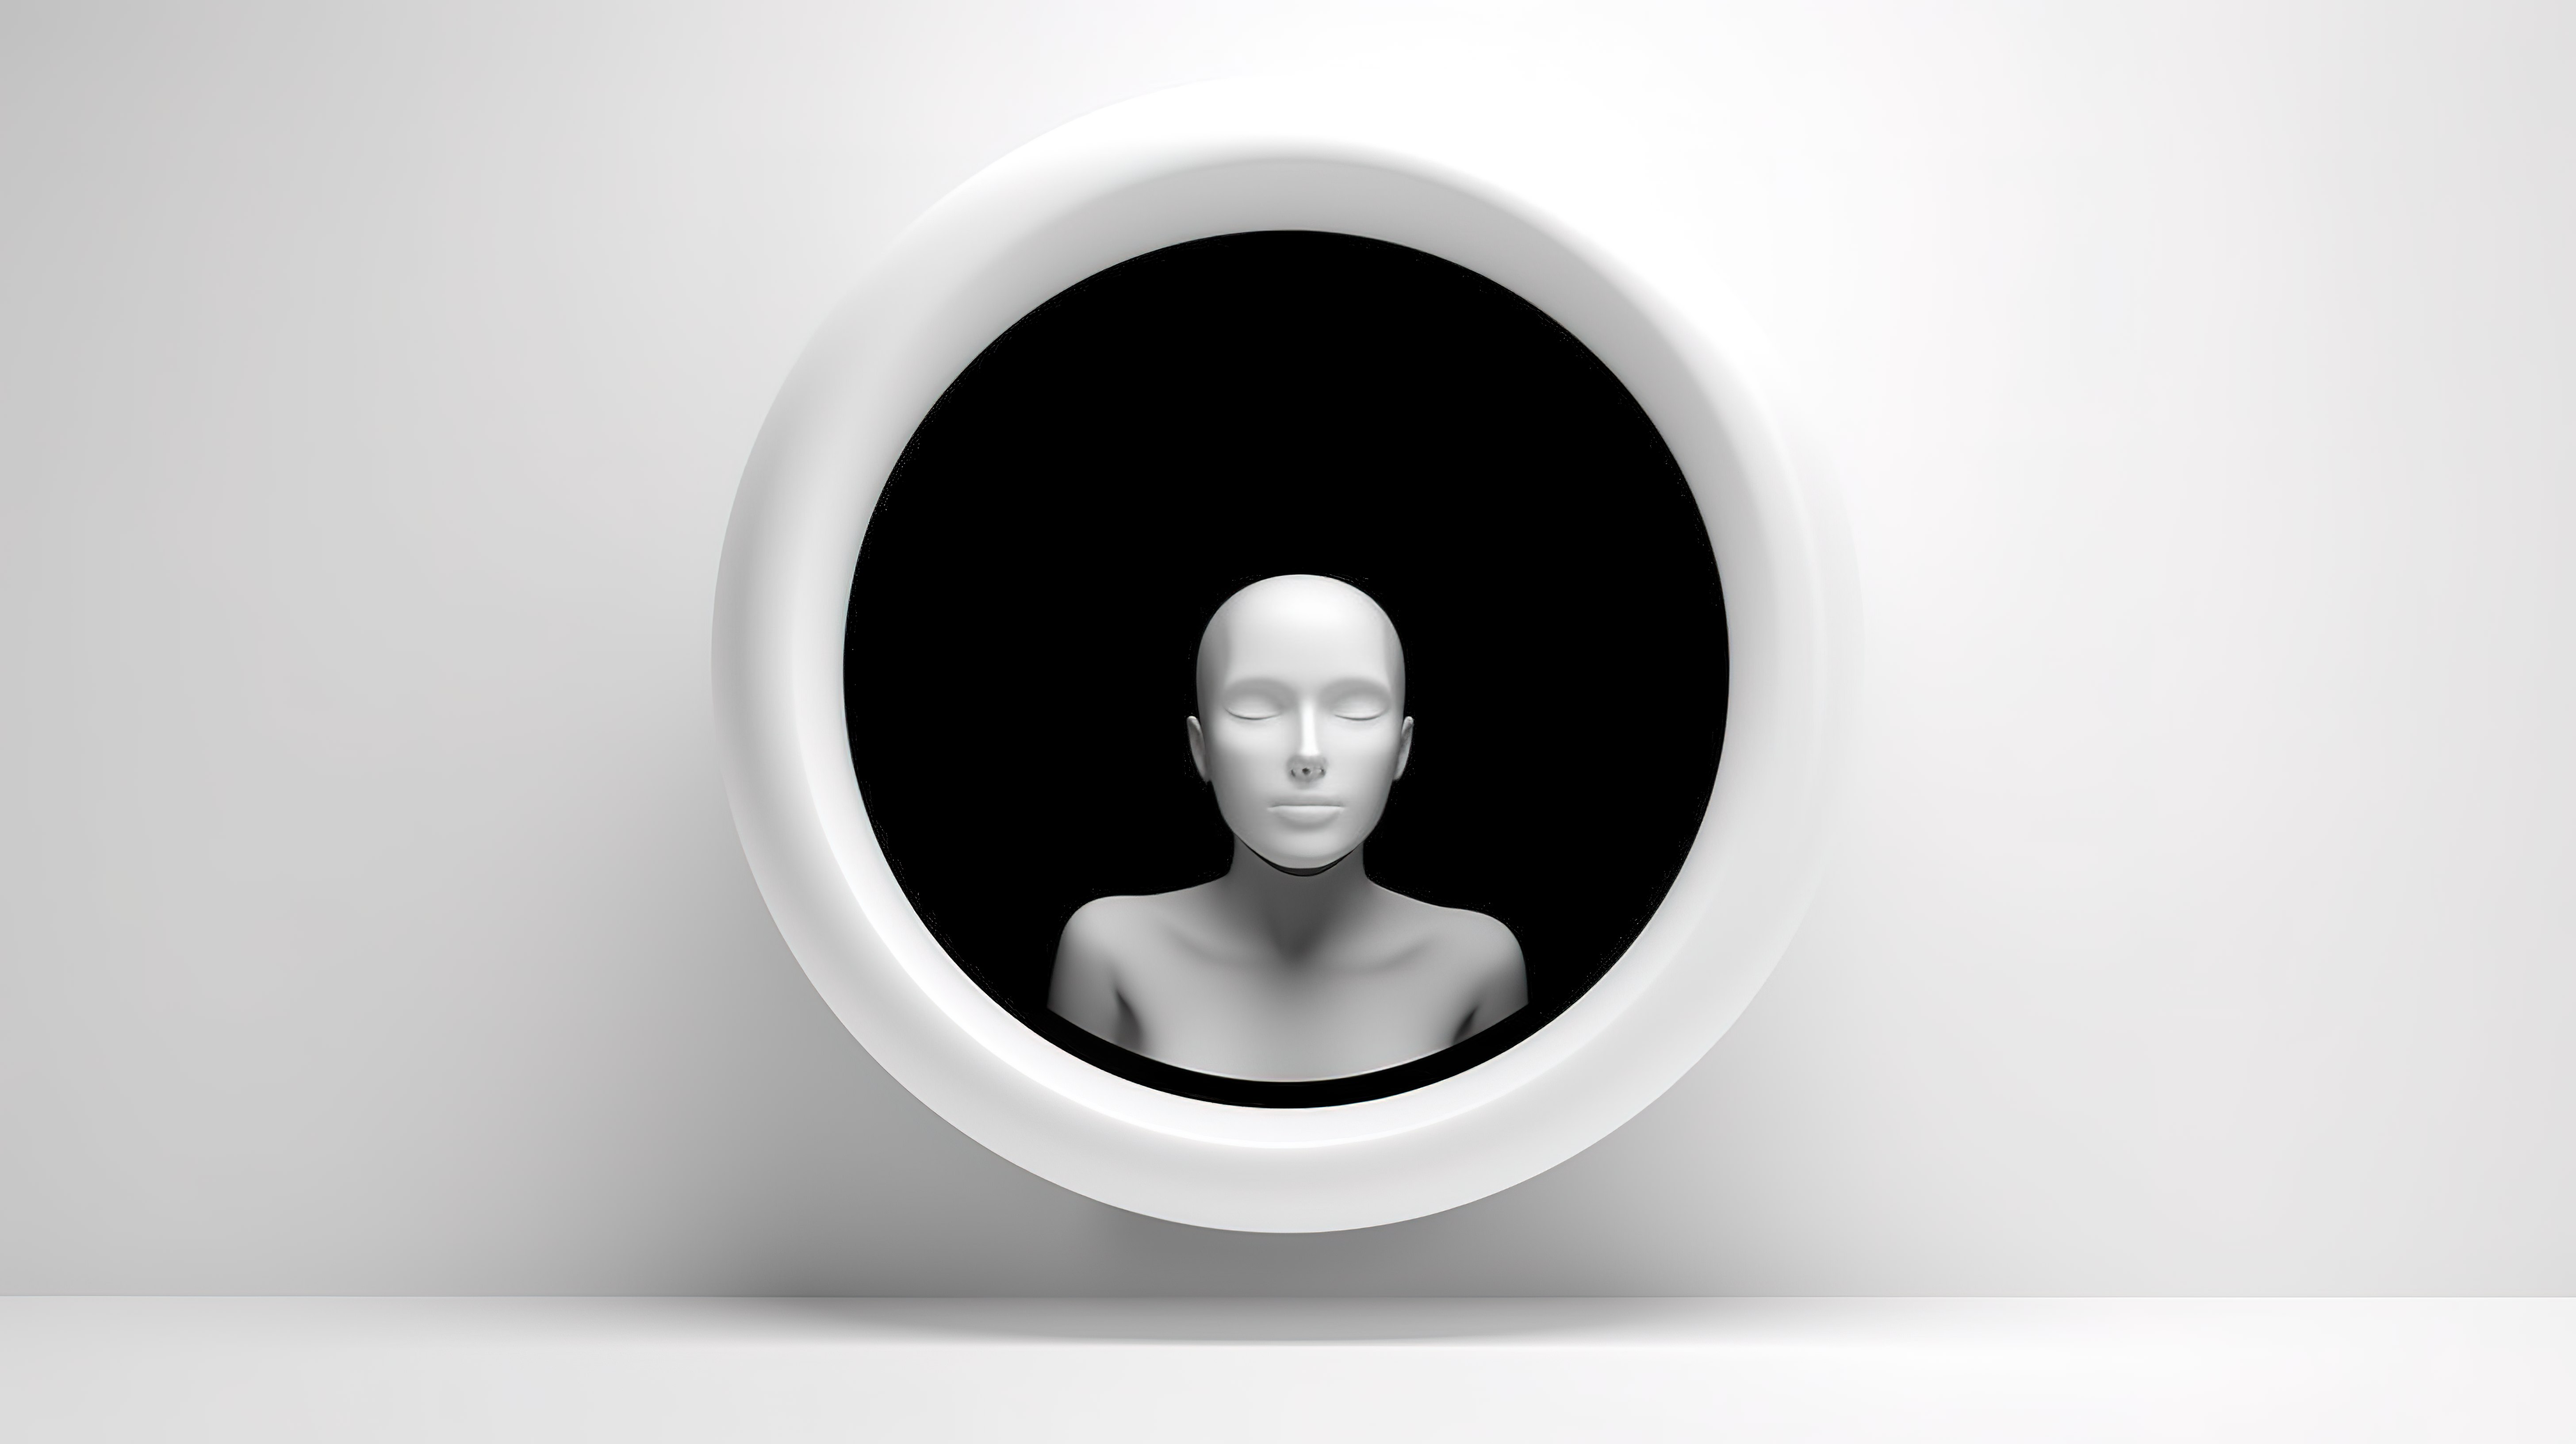 具有黑色头像形状的白洞非常适合互联网个人资料页面和头像令人惊叹的 3D 插图图片